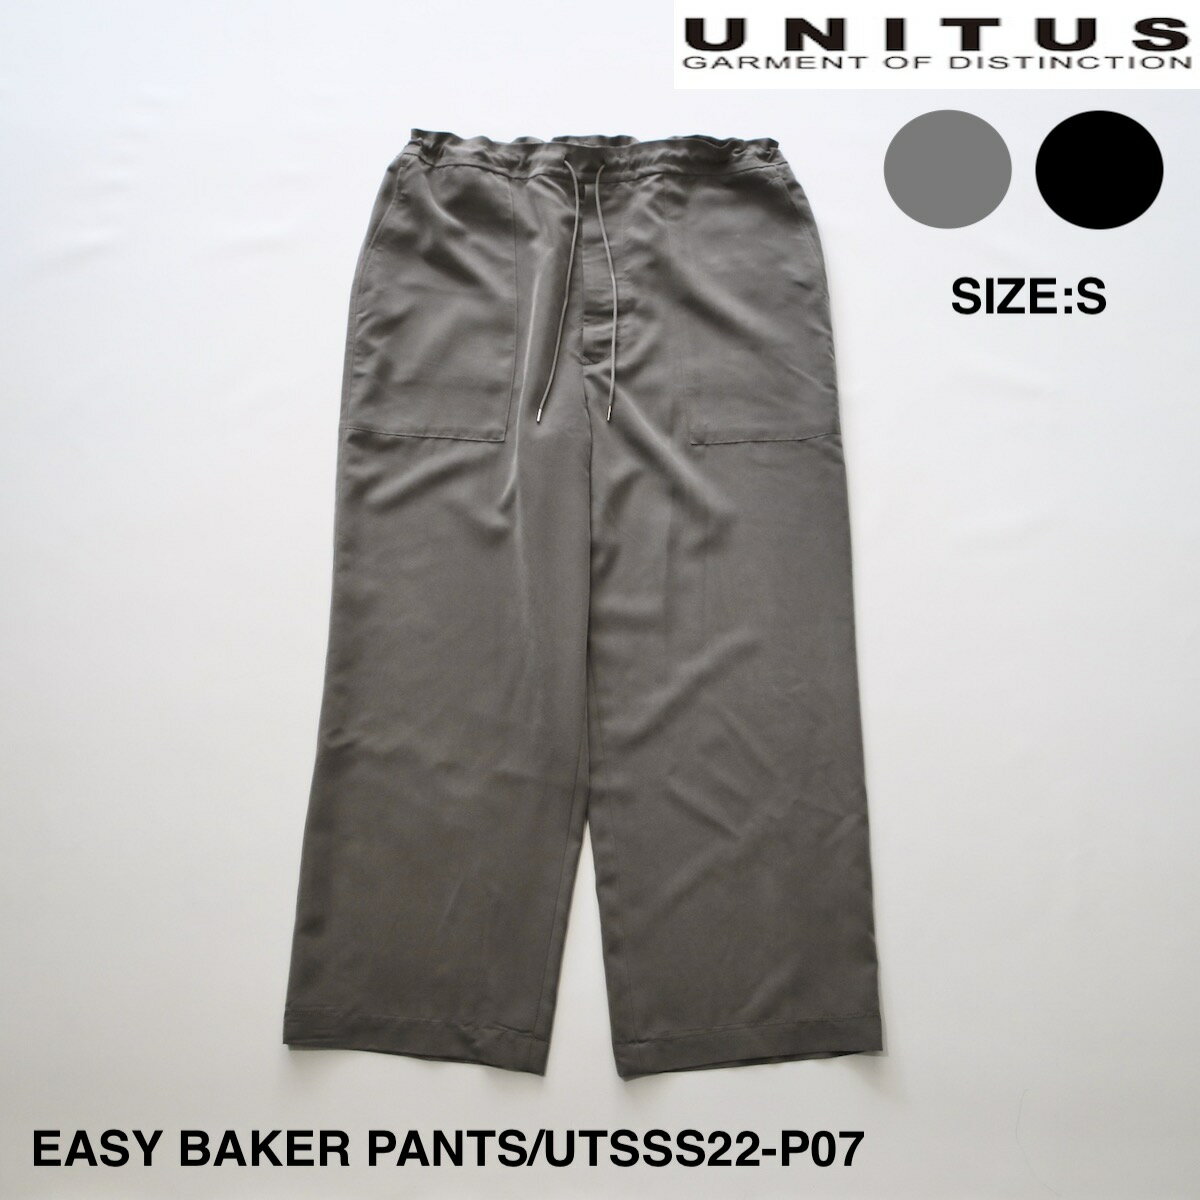 SALE セール 50%OFFユナイタス EASY BAKER PANTS | メンズ パンツ メンズパンツ カジュアル カジュアルパンツ ベイカー ベイカーパンツ イージー イージーパンツ イージーベイカーパンツ ワイド ワイドパンツ シンプル ブランド 日本製